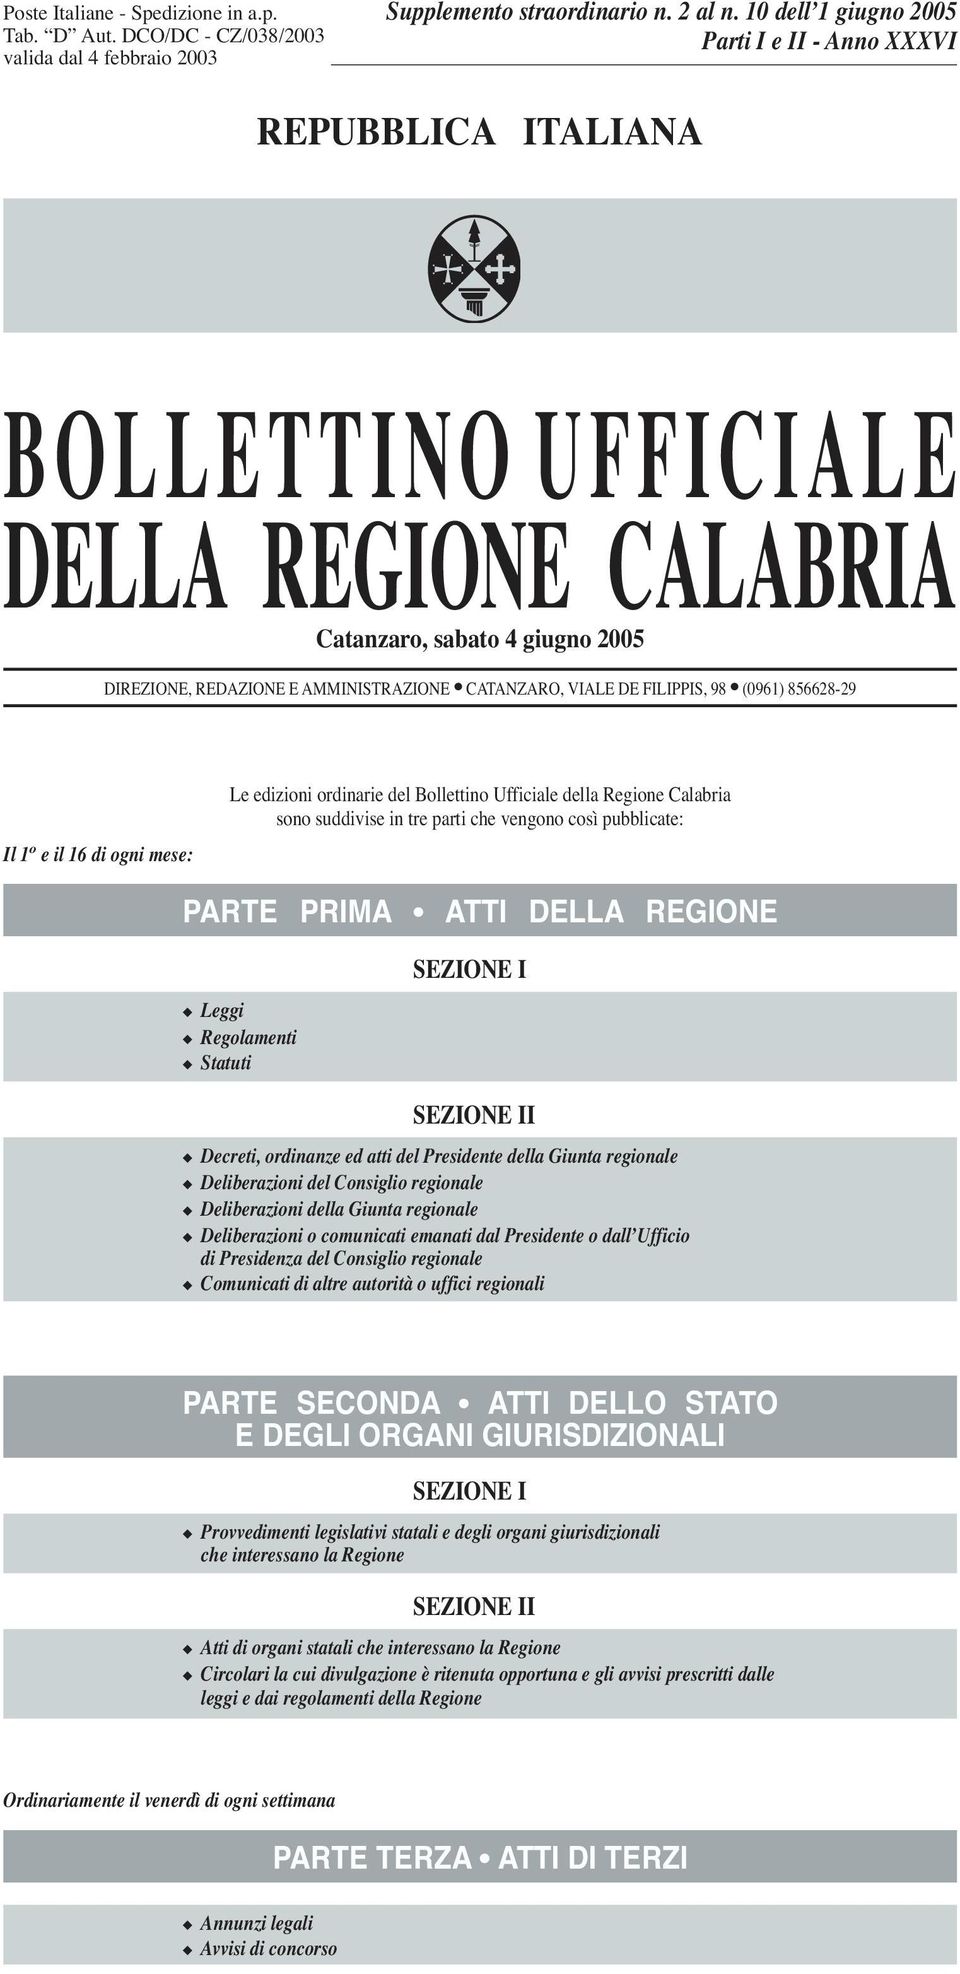 DE FILIPPIS, 98 (0961) 856628-29 Il 1 o e il 16 di ogni mese: Le edizioni ordinarie del Bollettino Ufficiale della Regione Calabria sono suddivise in tre parti che vengono così pubblicate: PARTE